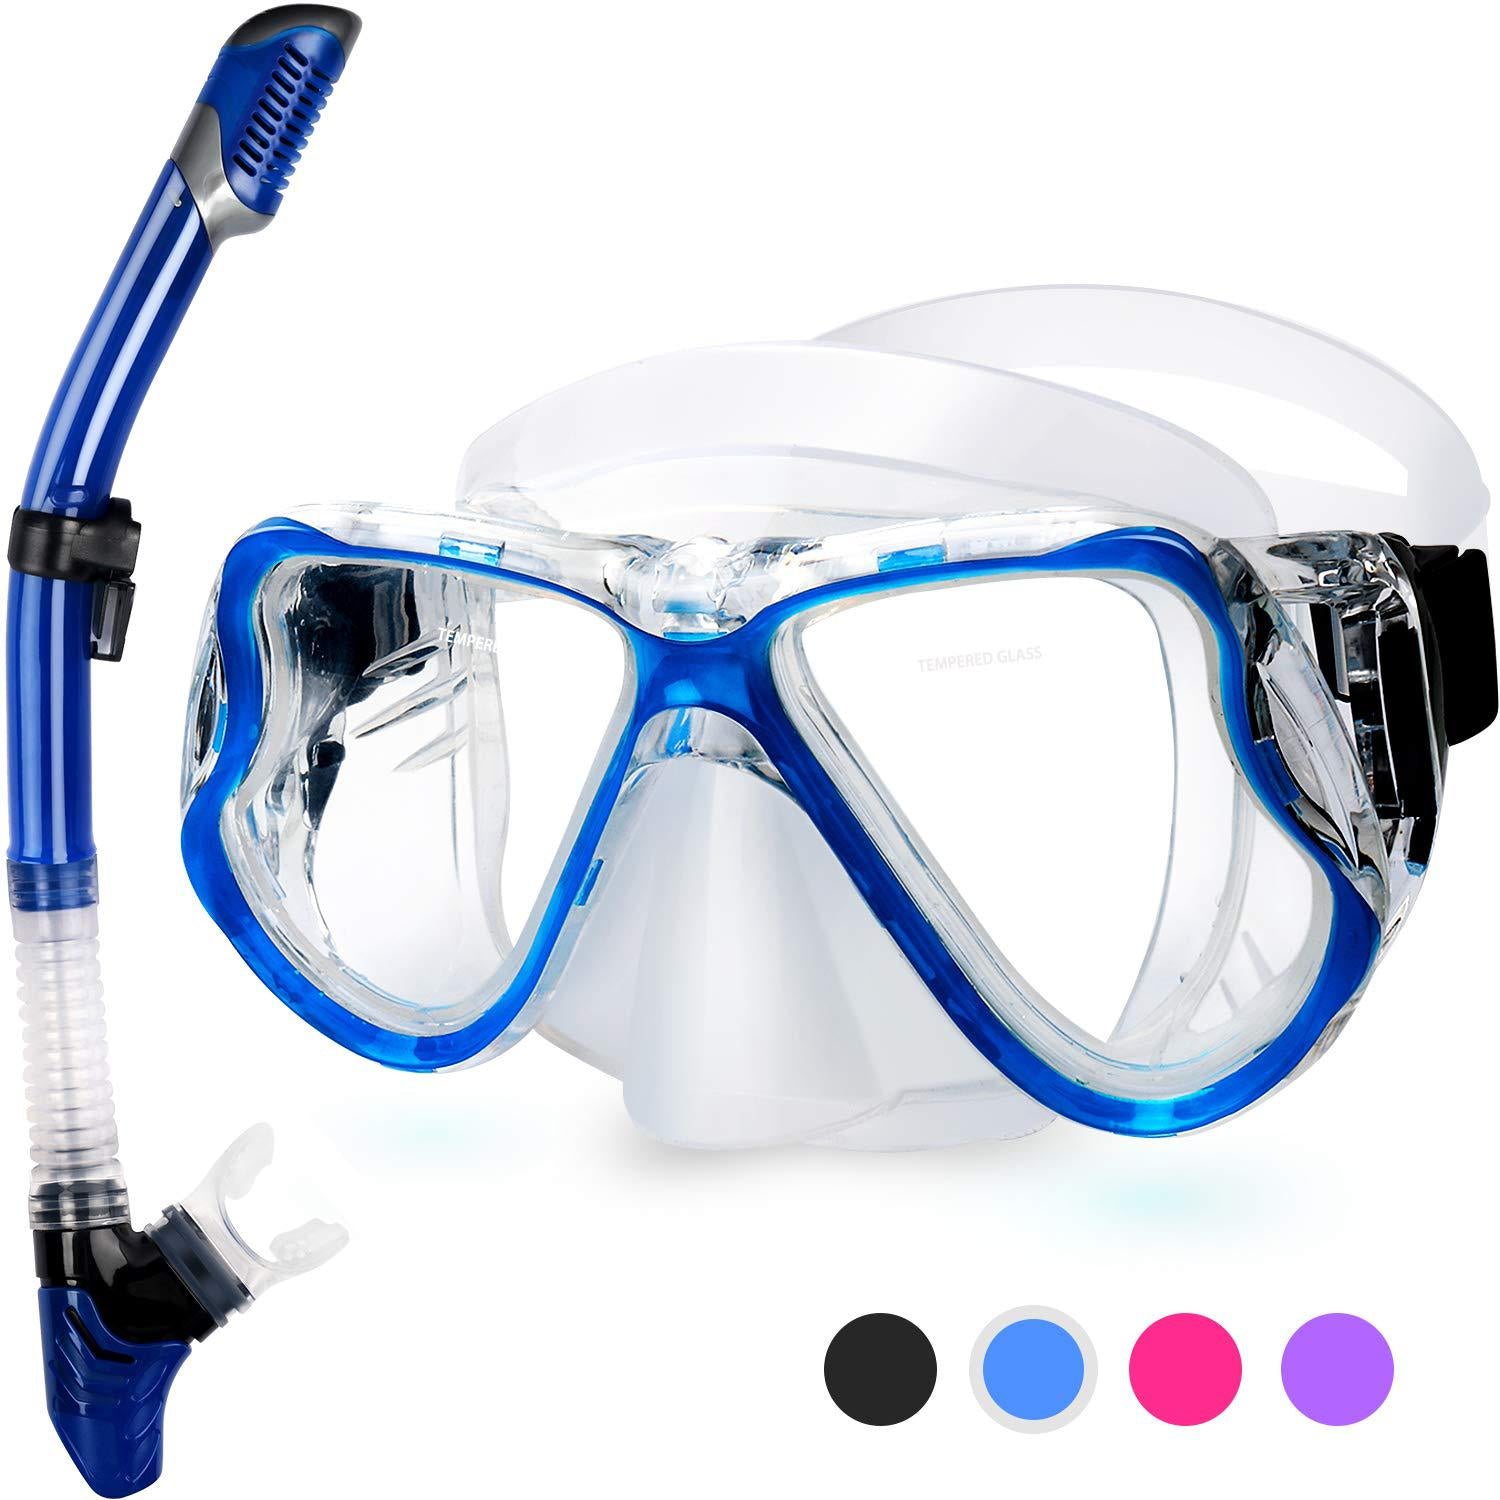 

Ochelari anti aburire pentru scufundat sau snorkeling, pentru adulți, cu ramă mare